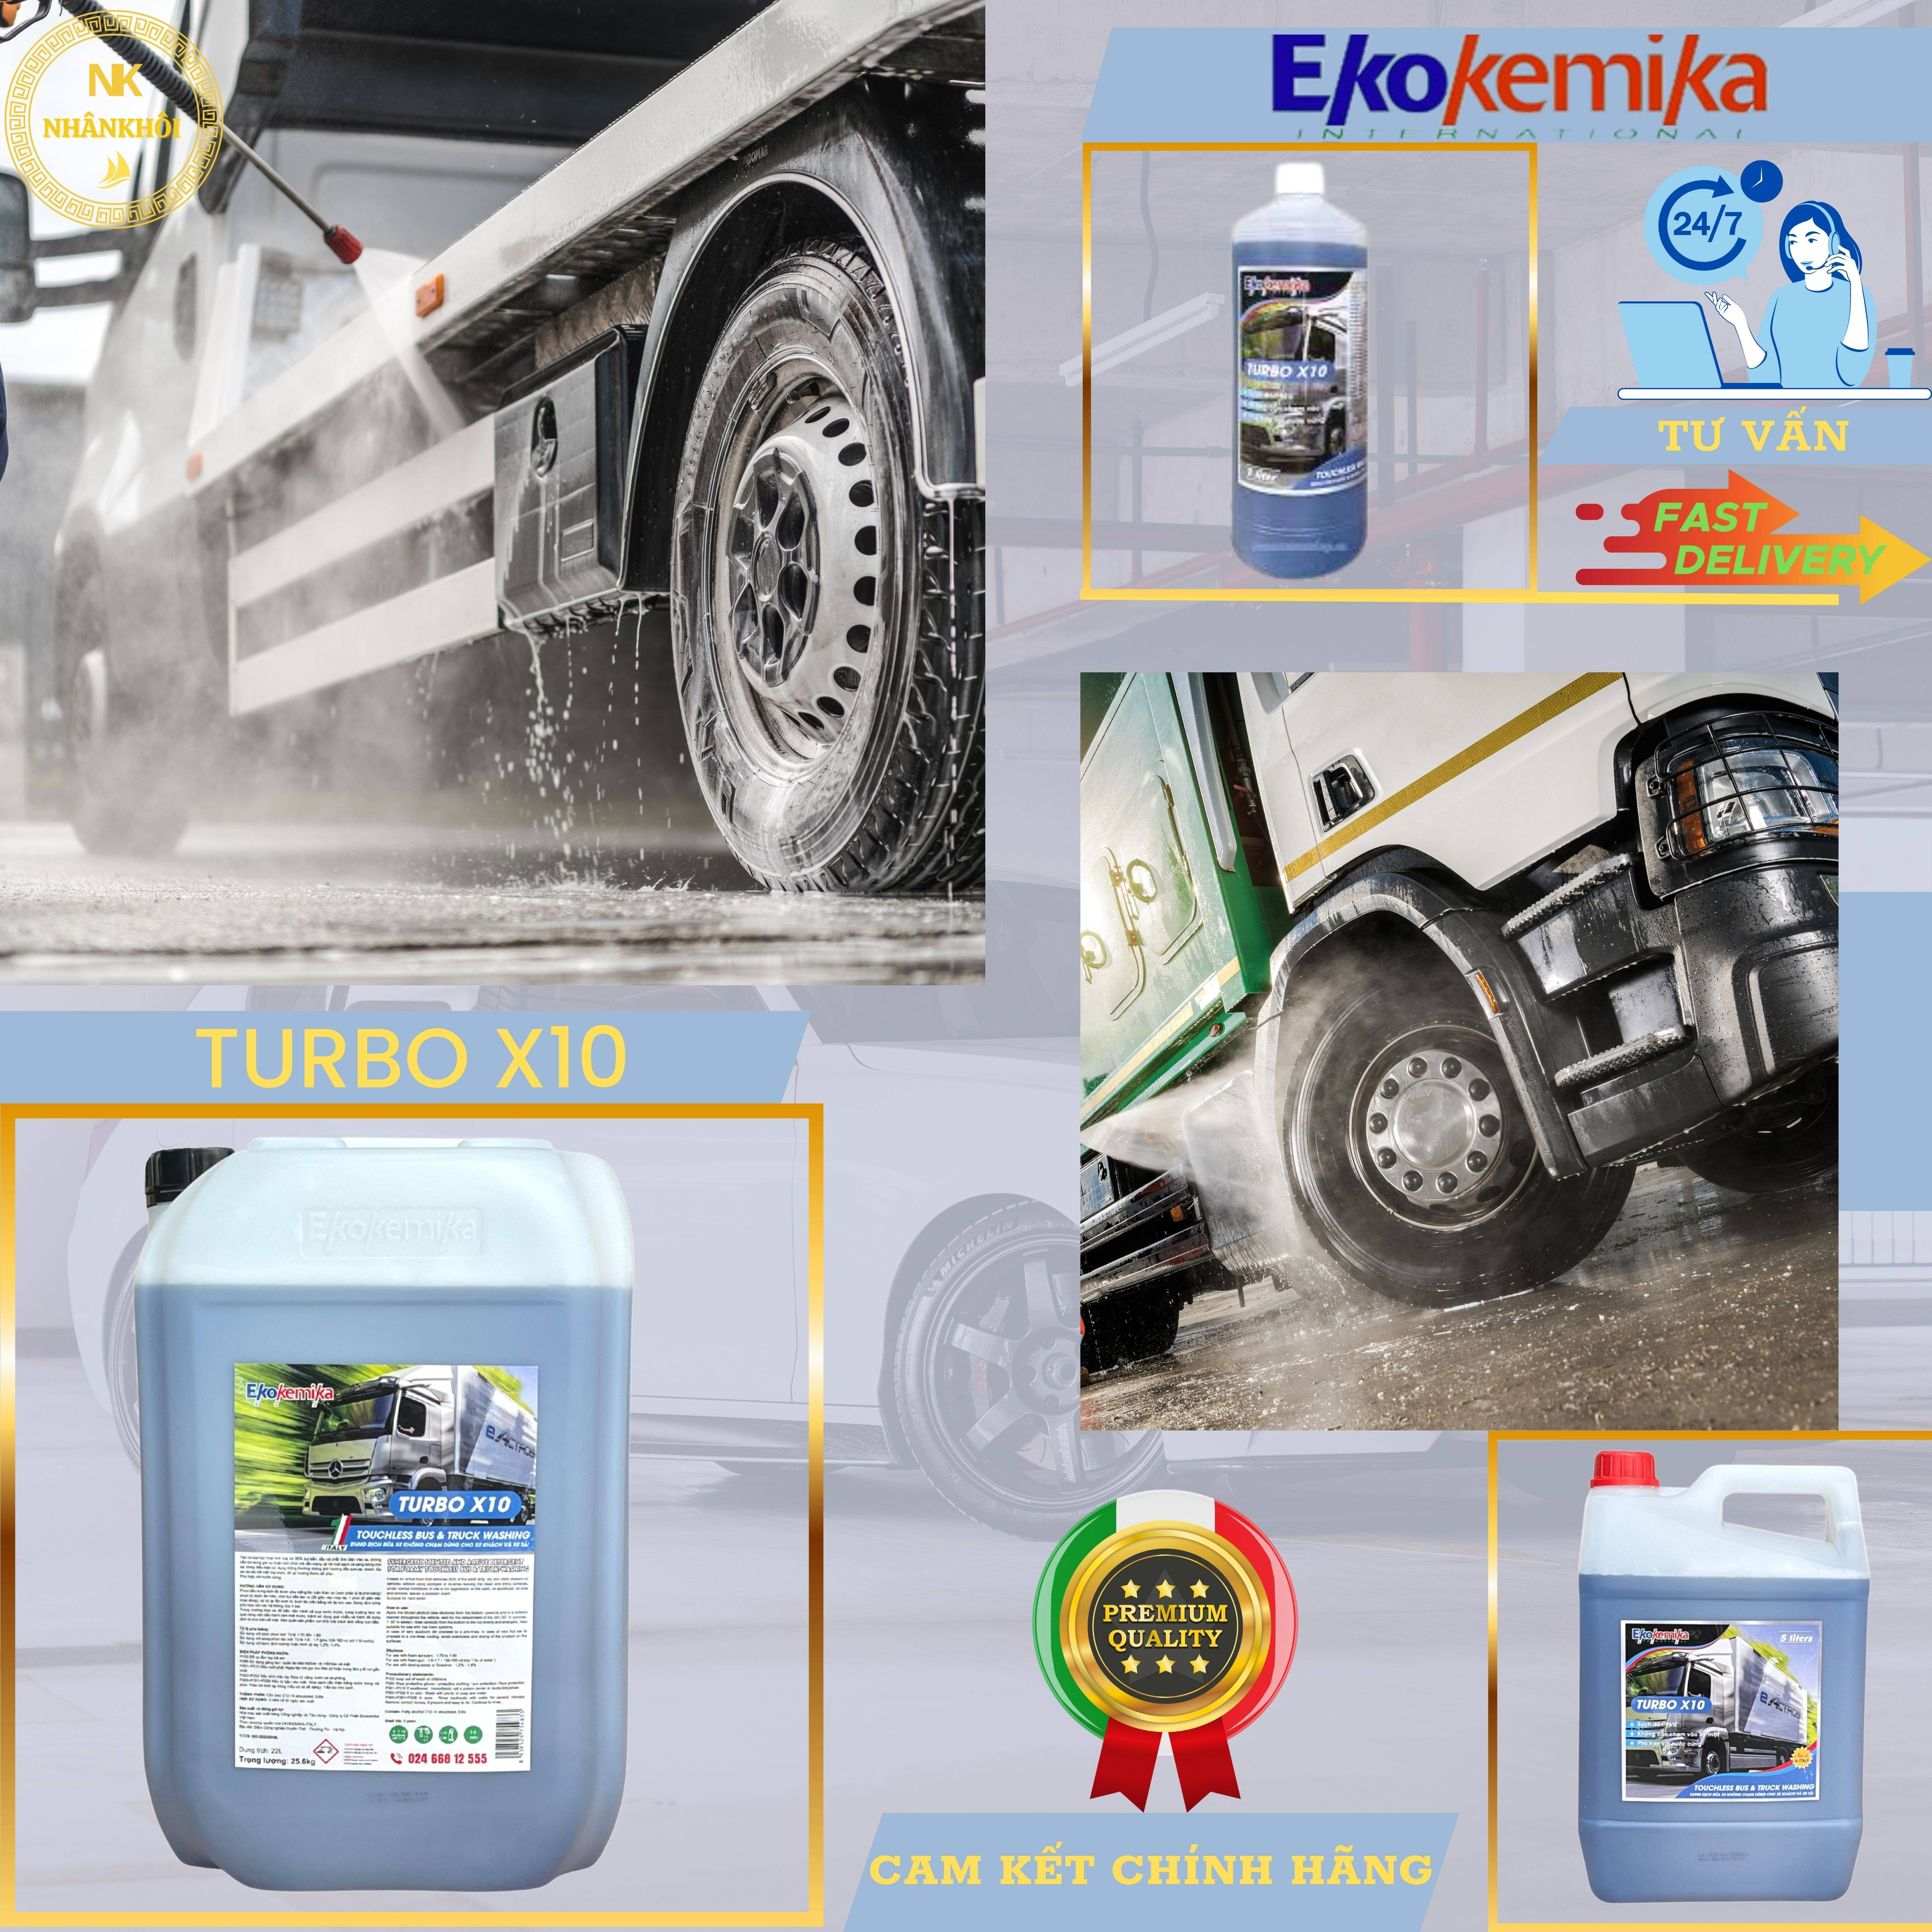 Turbo X10 - 1 lít - Dung dịch rửa xe không chạm - Nước rửa xe bọt tuyết - Ekokemika